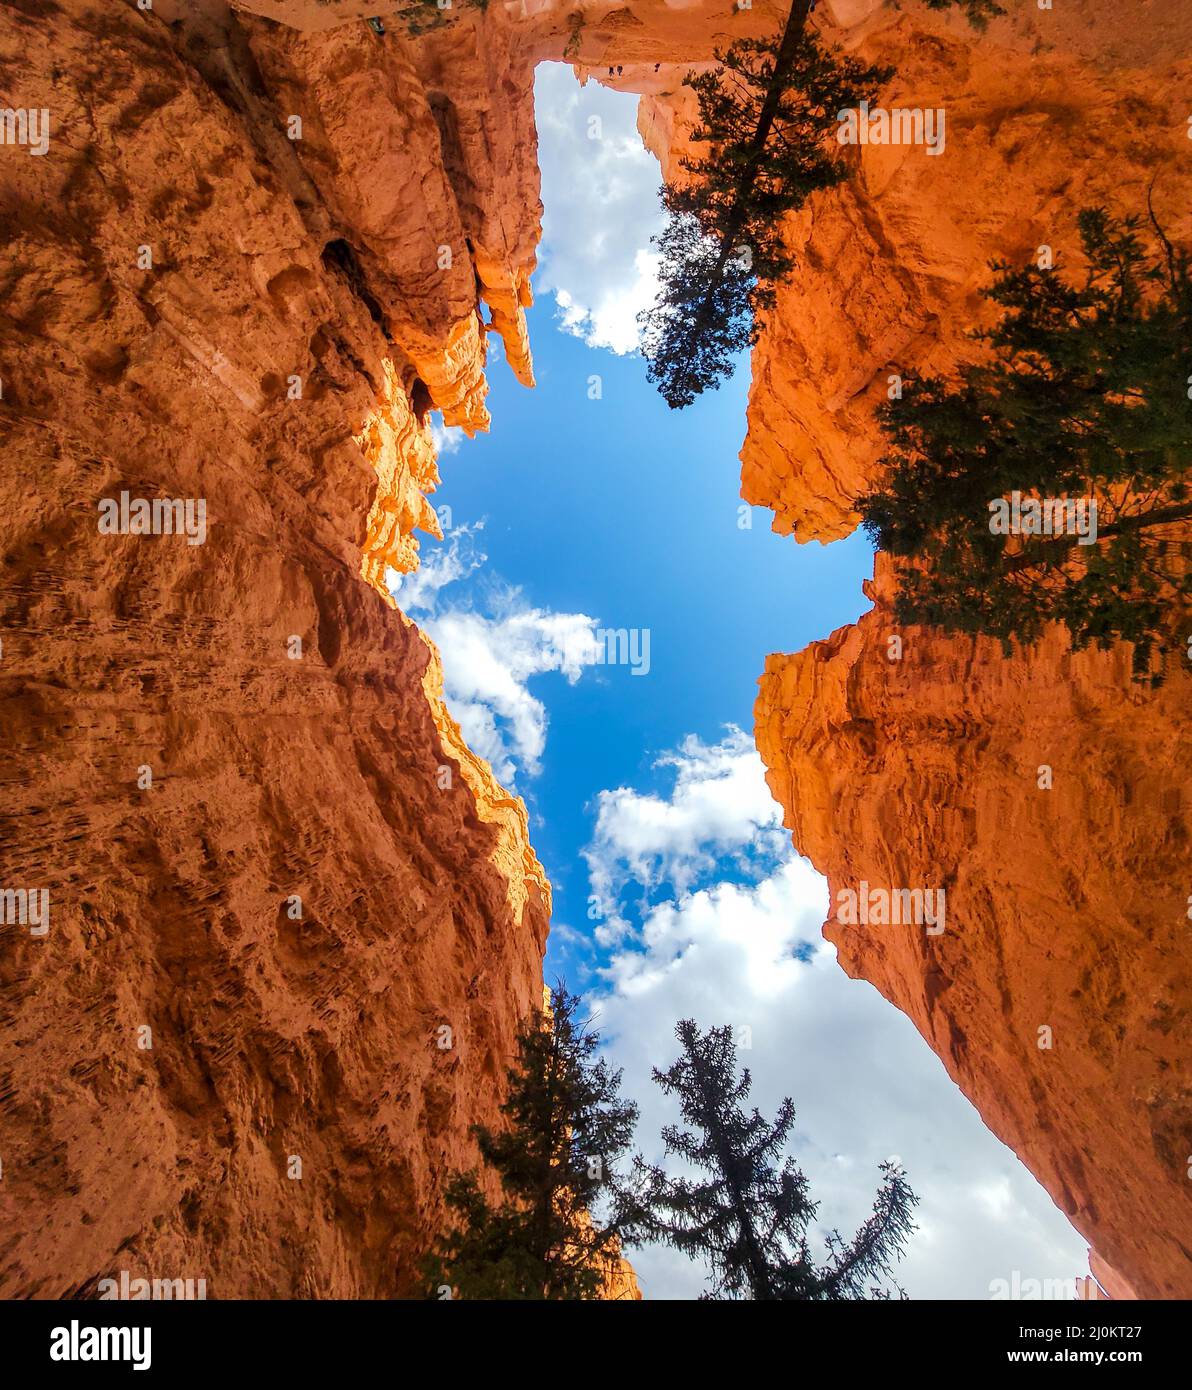 Bryce Canyon National Park con vista sullo Sky mentre si è sulla pista di peekaboo. Formazioni di roccia arancione chiamate Hoodoos tutto intorno. Rocce alte Foto Stock